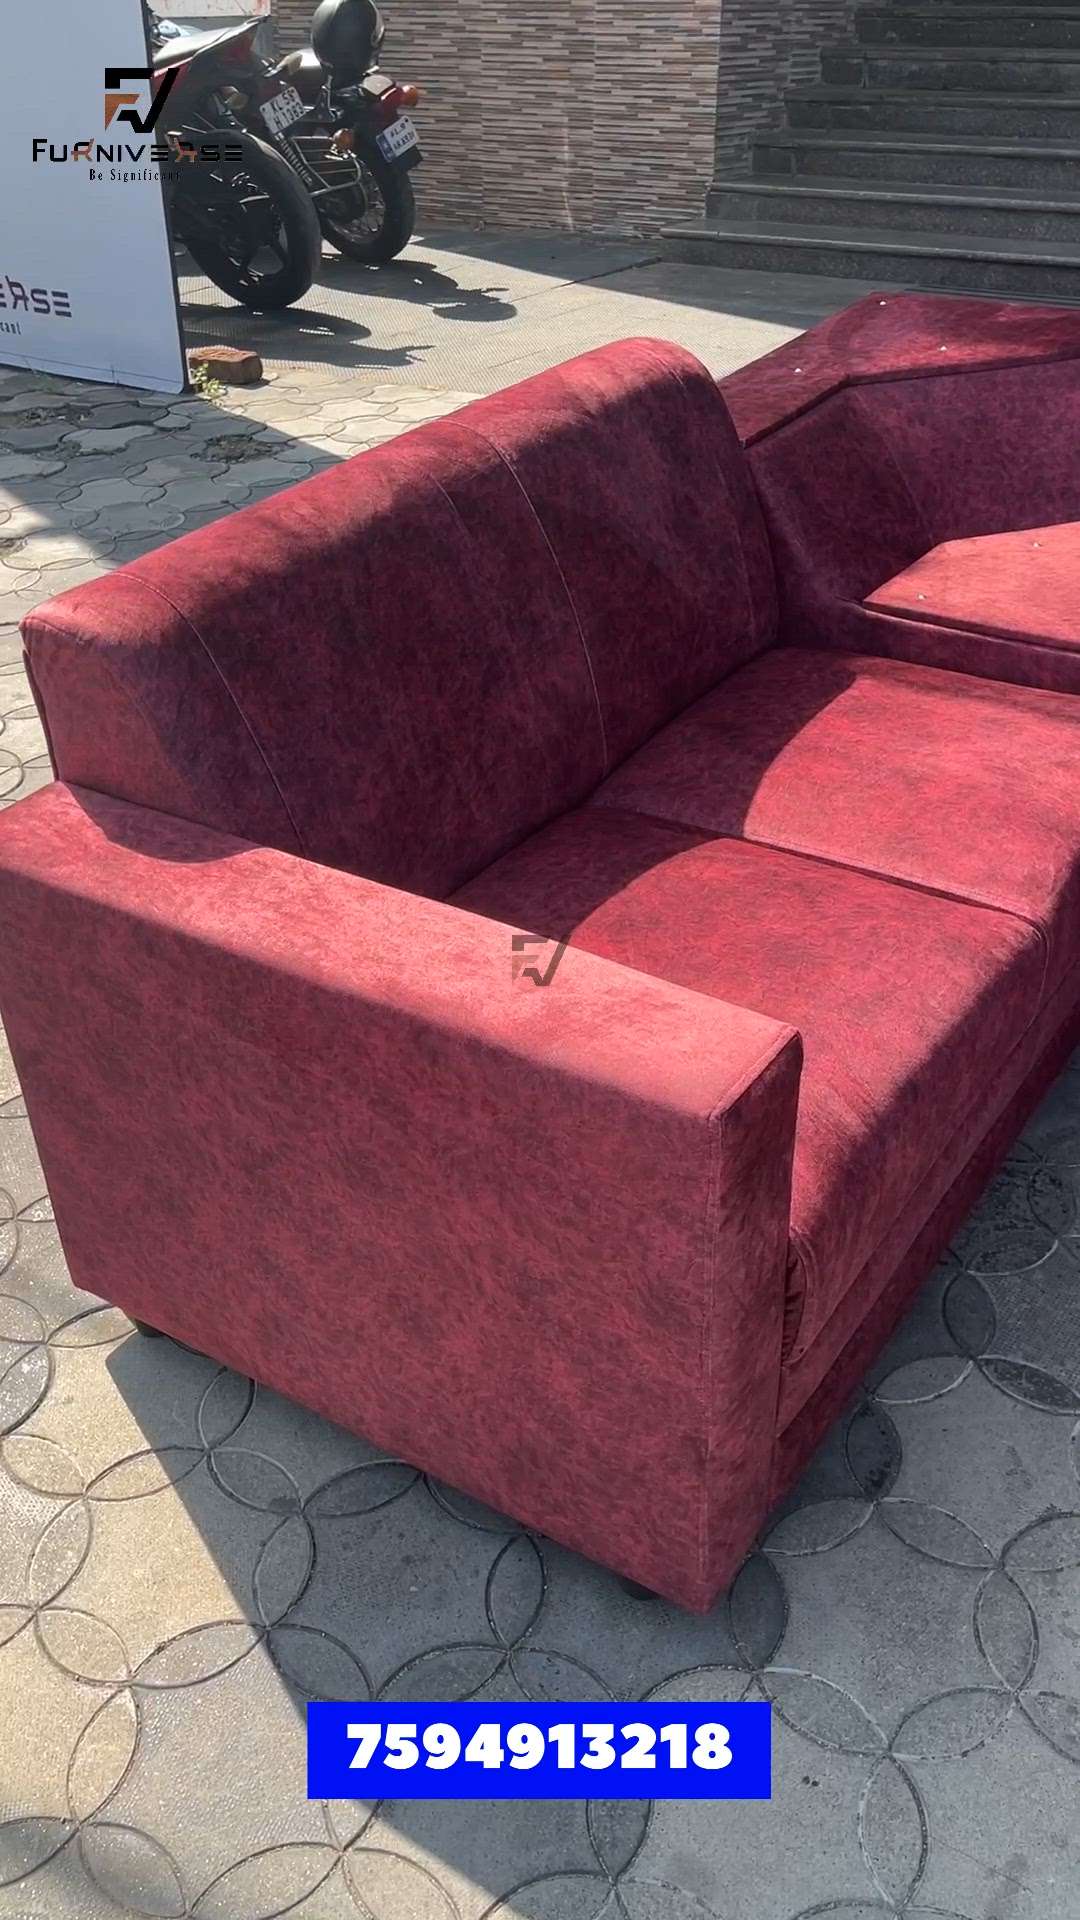 Customized Sofa set
Contact:  7594913218
.
.
.
.
. #Sofas #furnitures #LivingRoomSofa #furniverse  #furniversepalakkad